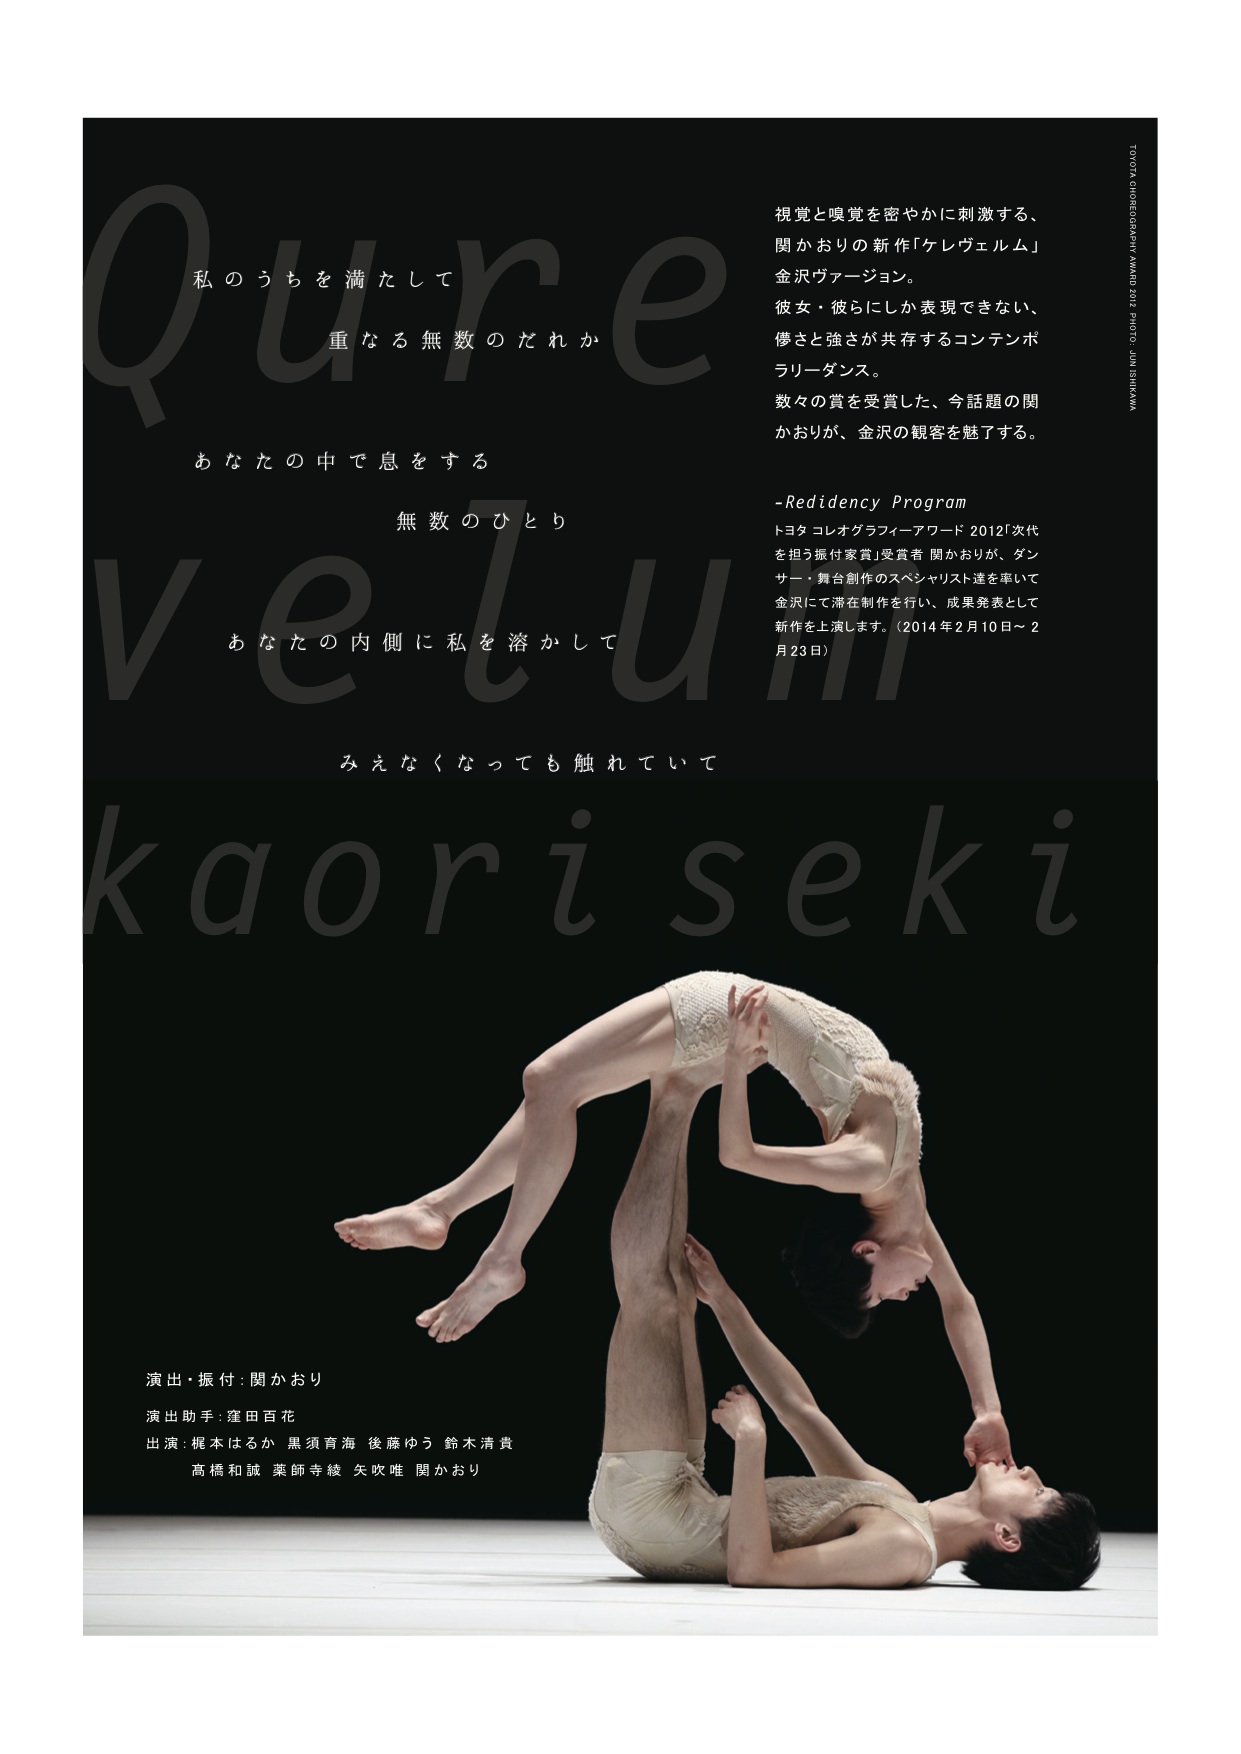 トヨタ コレオグラフィーアワード 2012 受賞者 レジデンシー&新作公演 『ケレヴェルム 金沢ver.』←終了しました